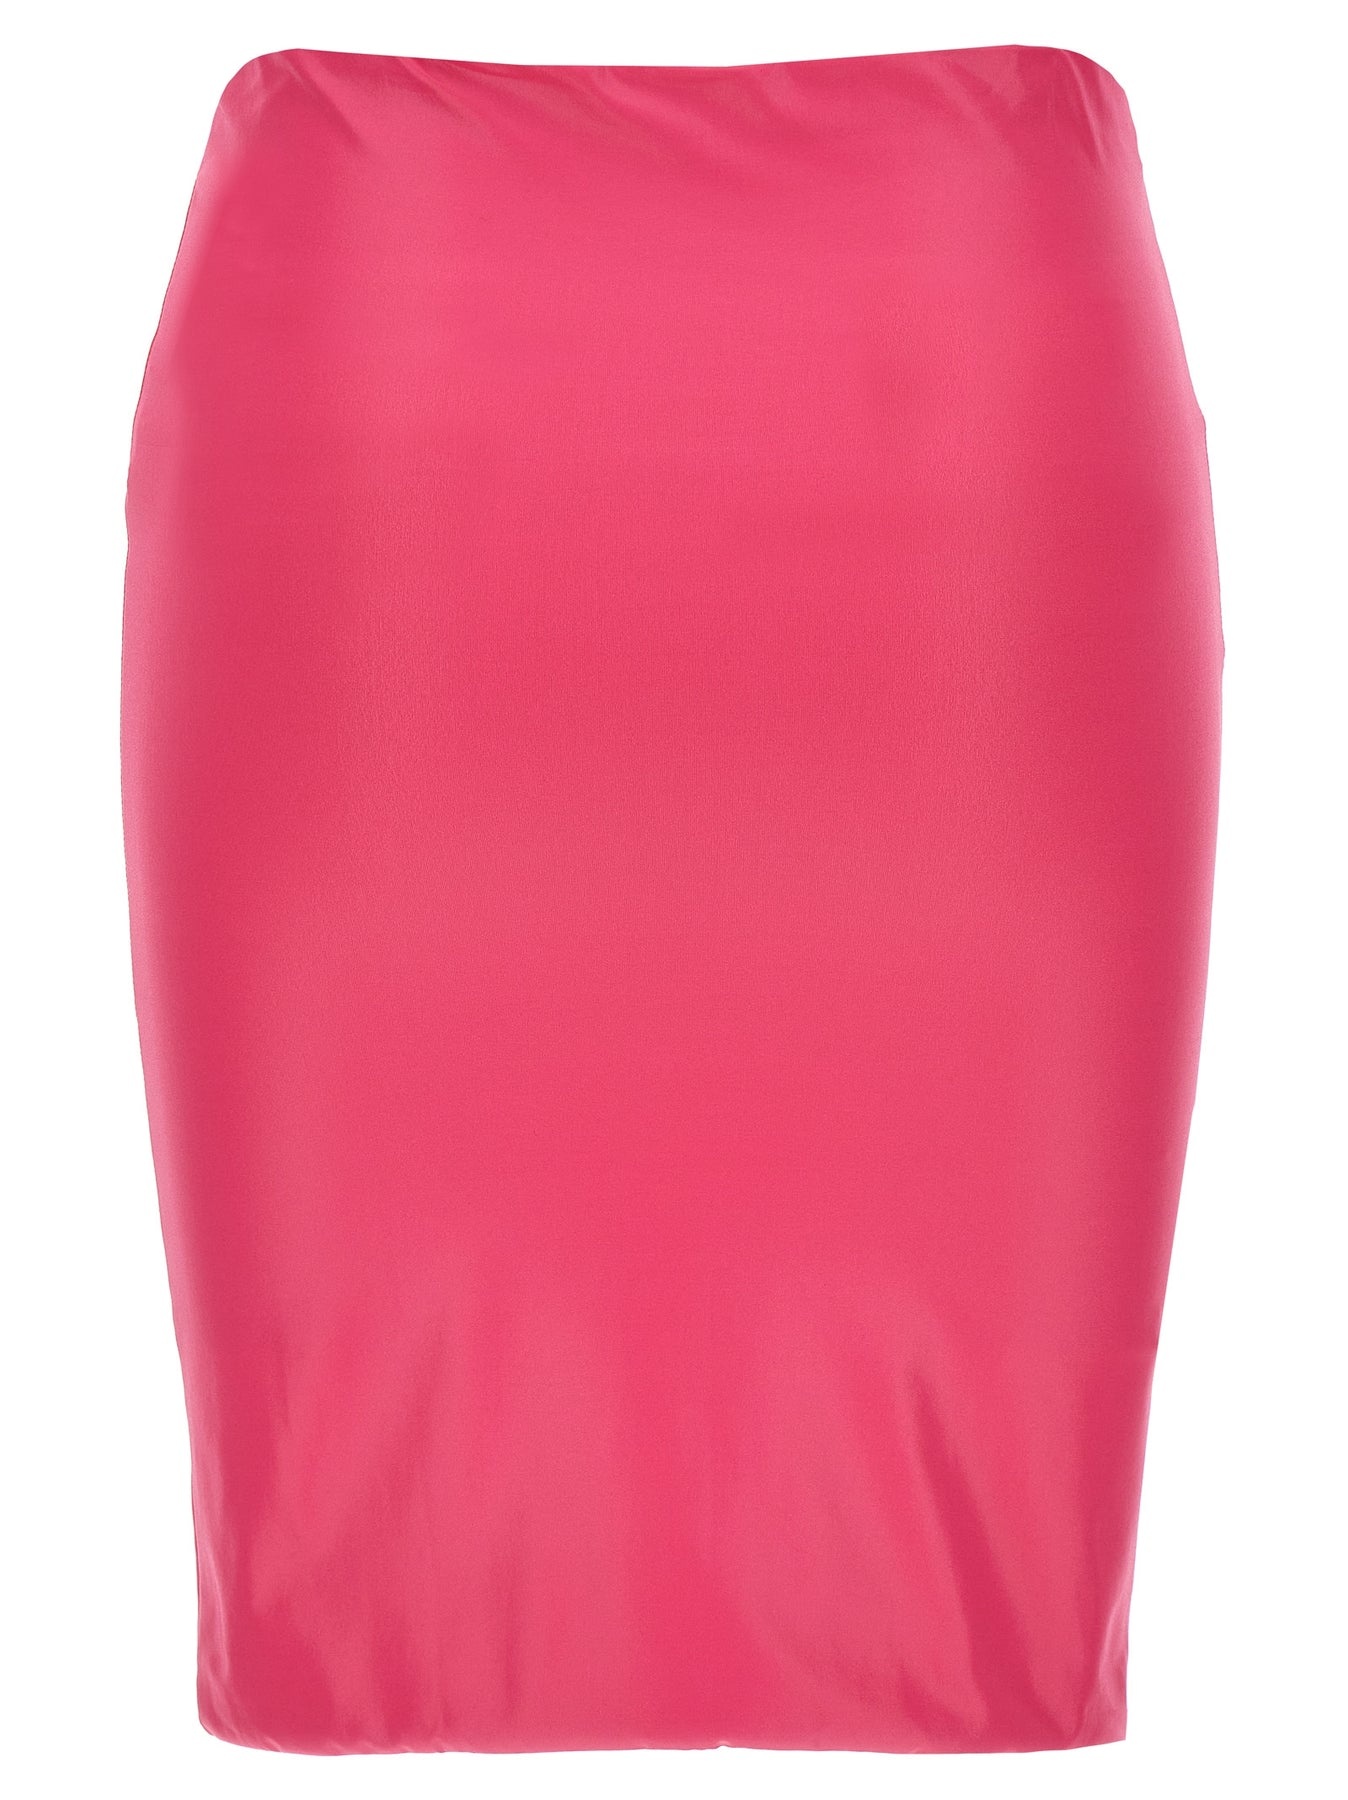 Lycra Miniskirt Beachwear Fuchsia - 2